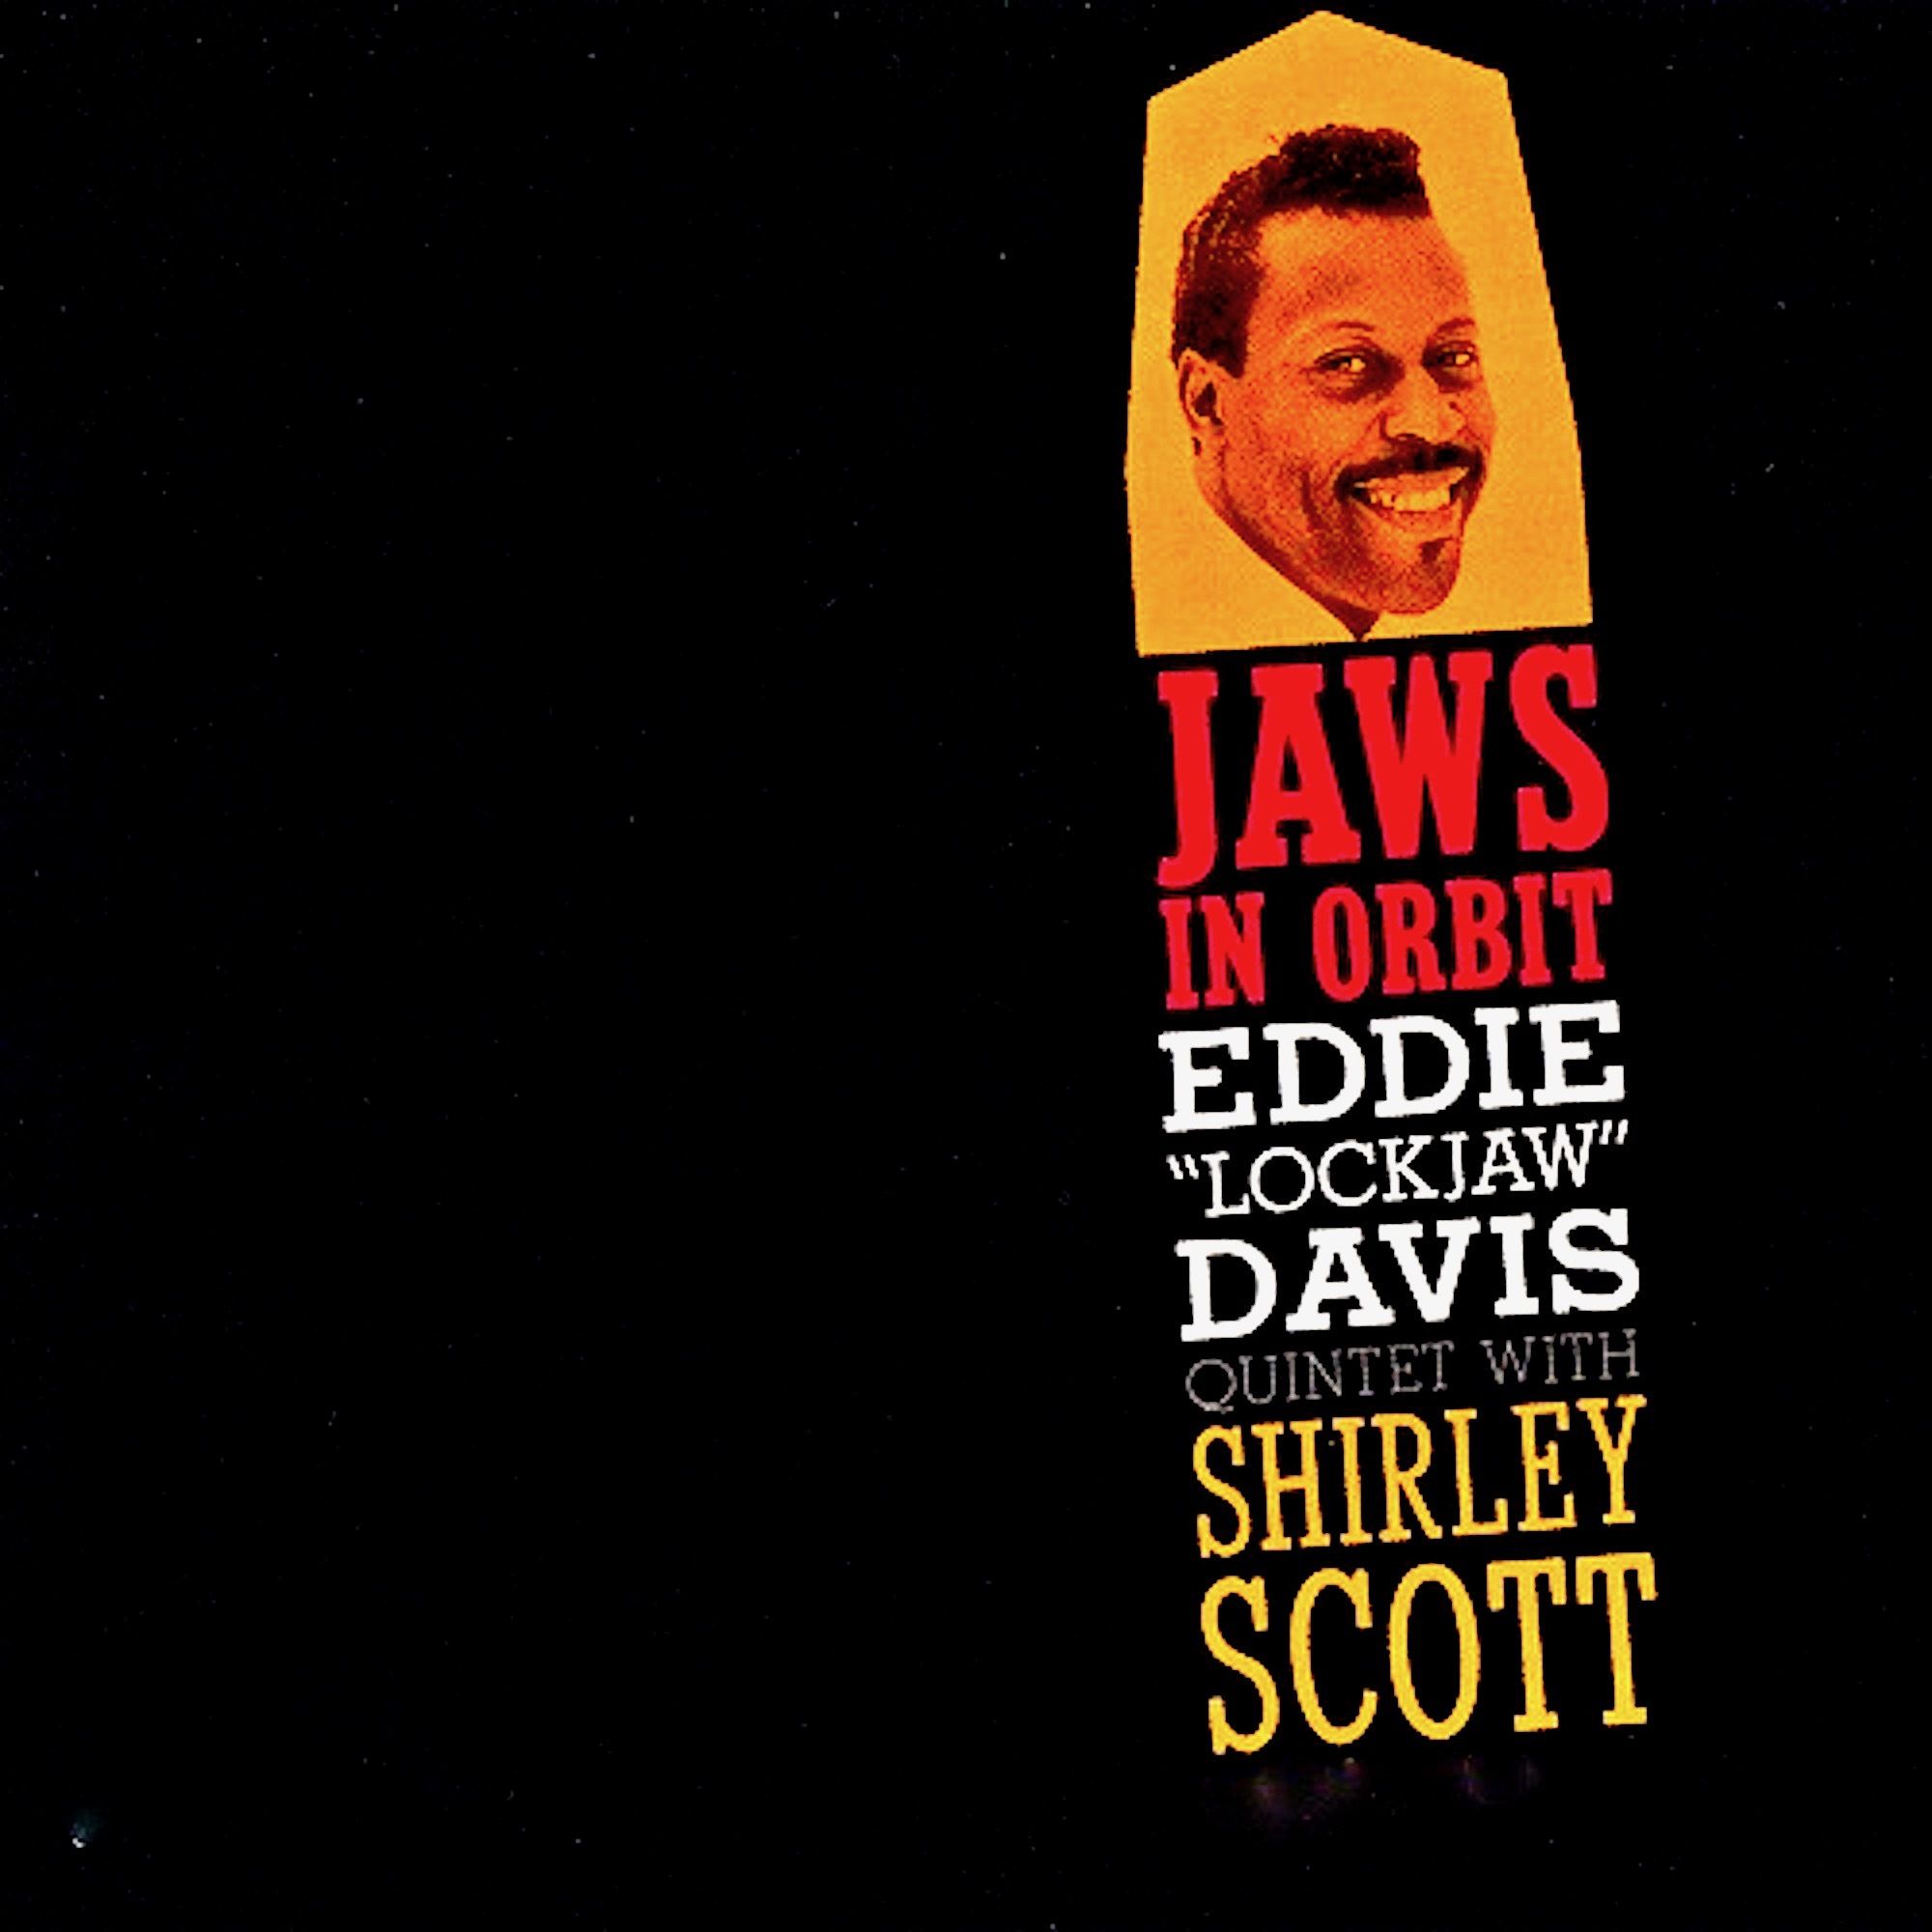 Eddie ‘Lockjaw’ Davis Quintet With Shirley Scott - Jaws In Orbit (1959/2019) [FLAC 24bit/44,1kHz]